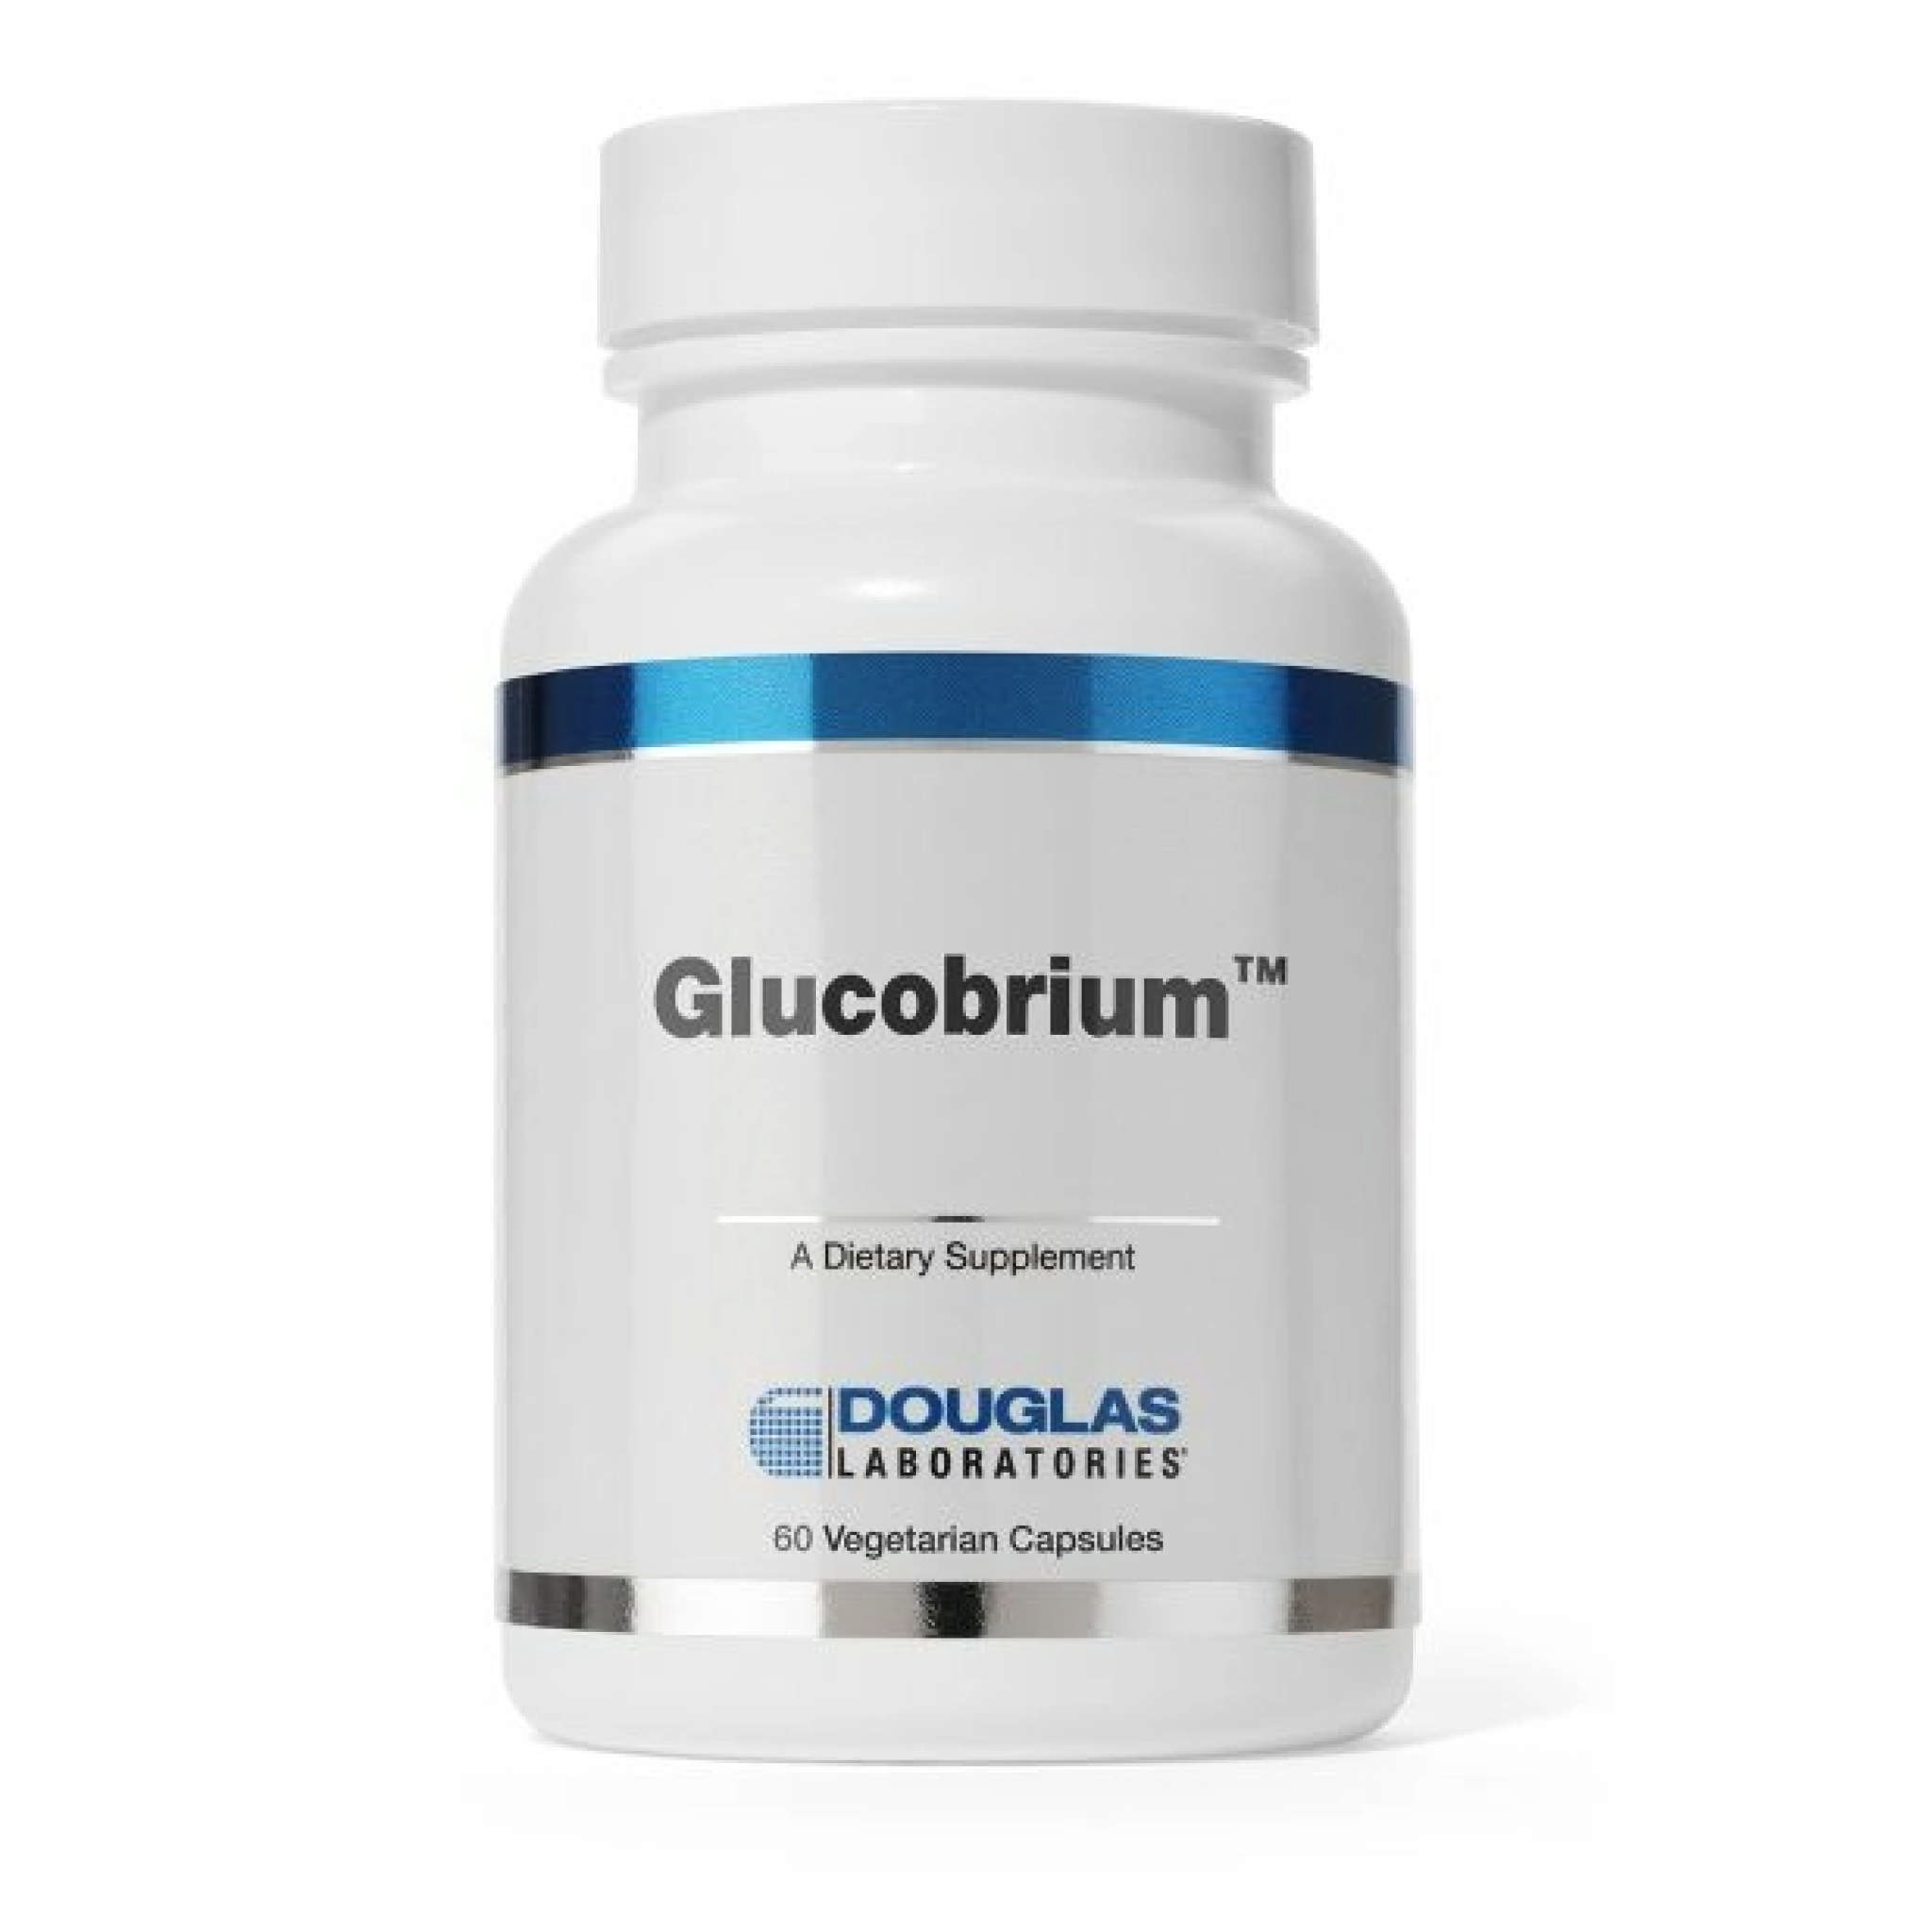 Douglas Laboratories - Gluco Brium